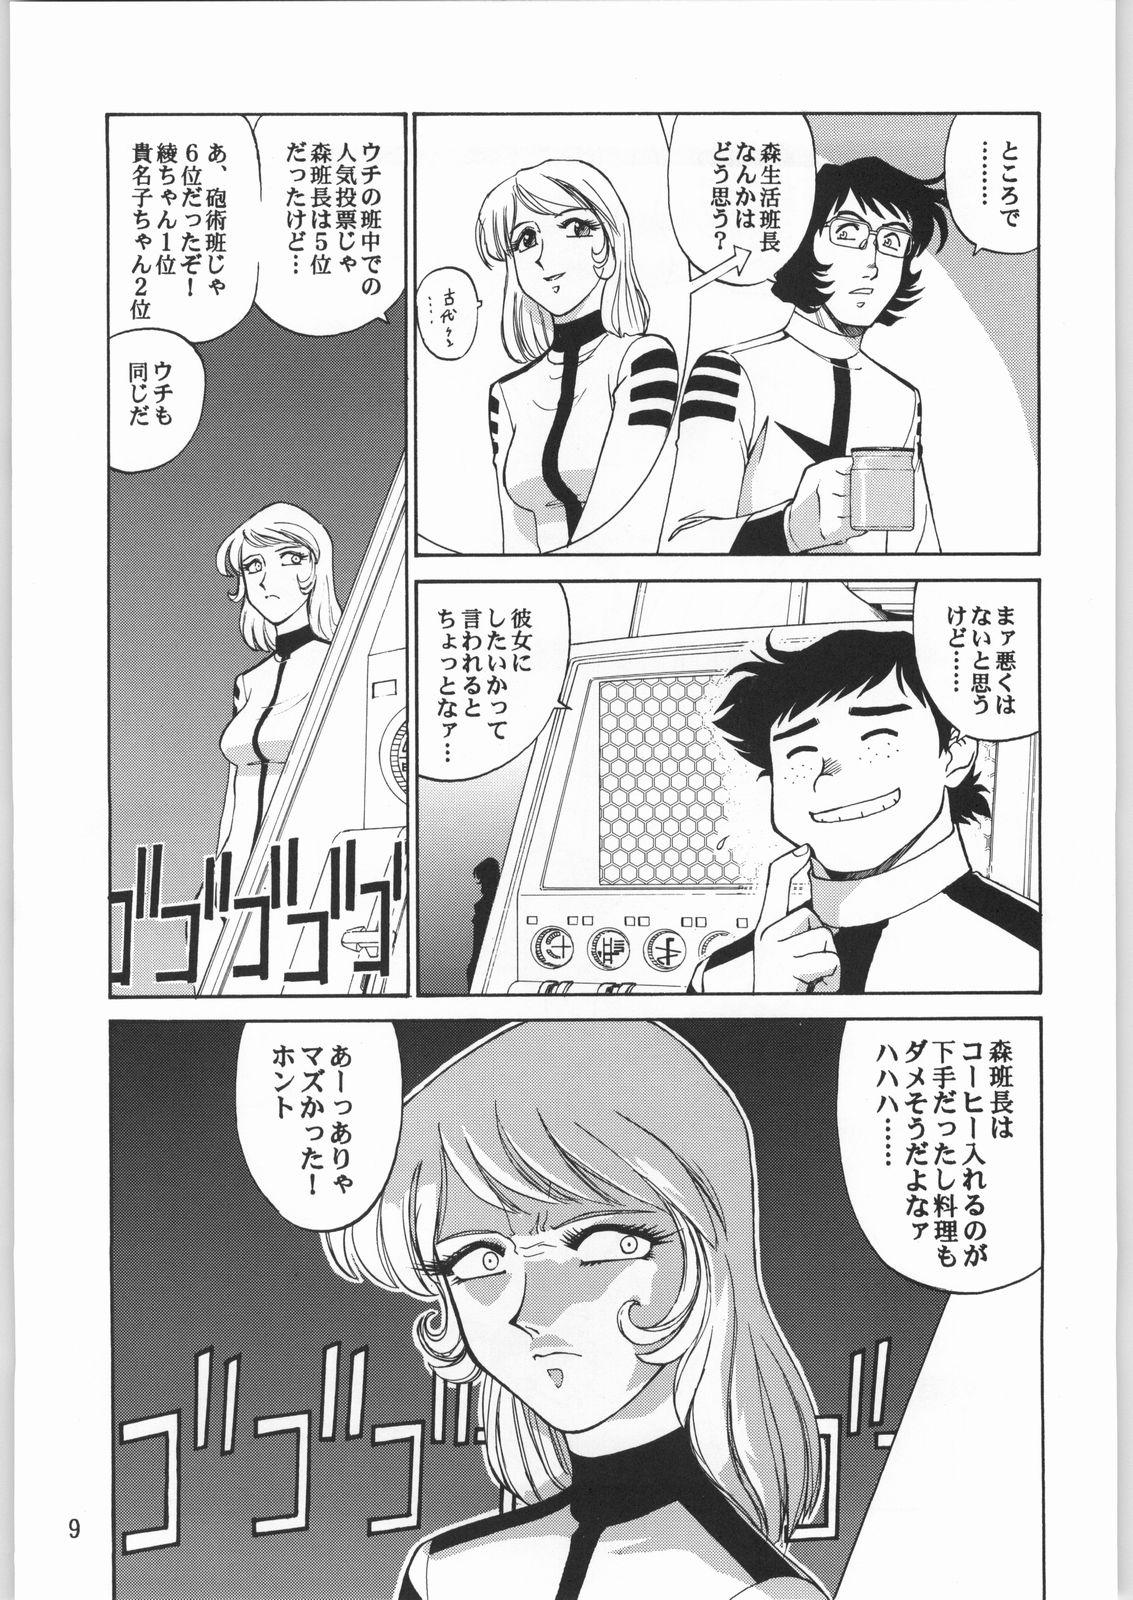 Redhead Megaton Punch 1 - Space battleship yamato Chobits Gayemo - Page 8